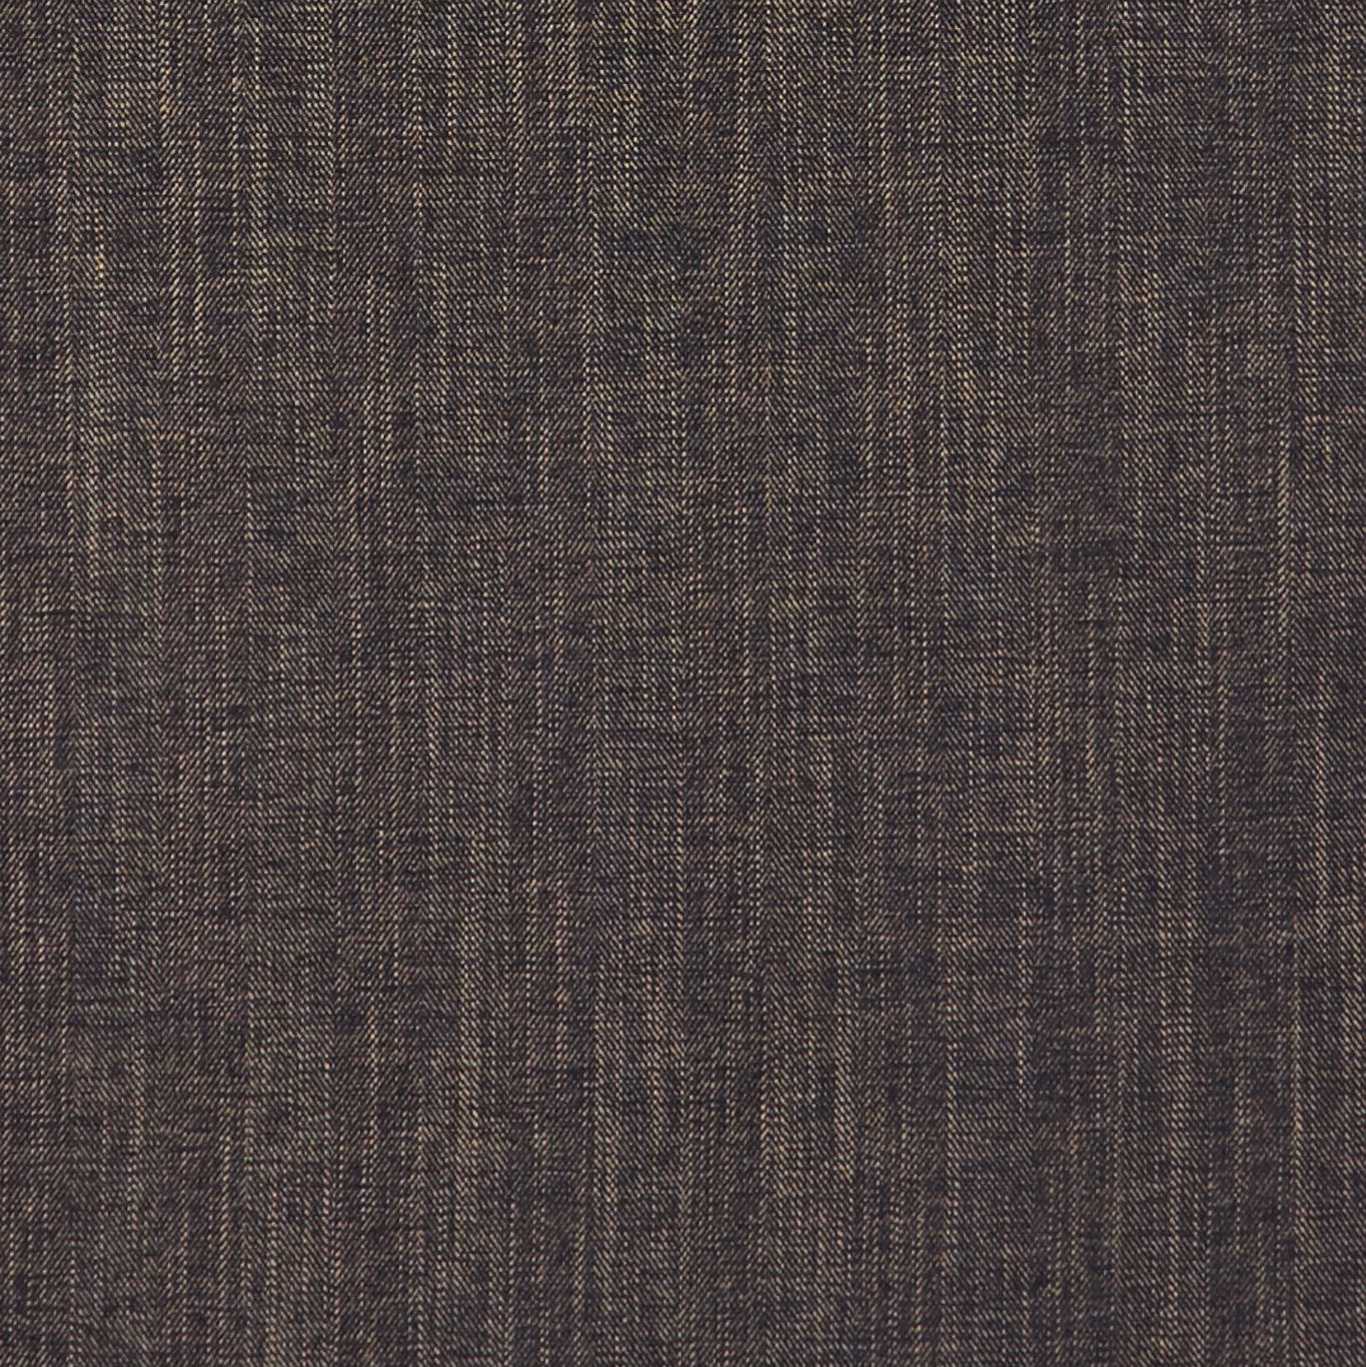 Moray Ebony Fabric by CNC